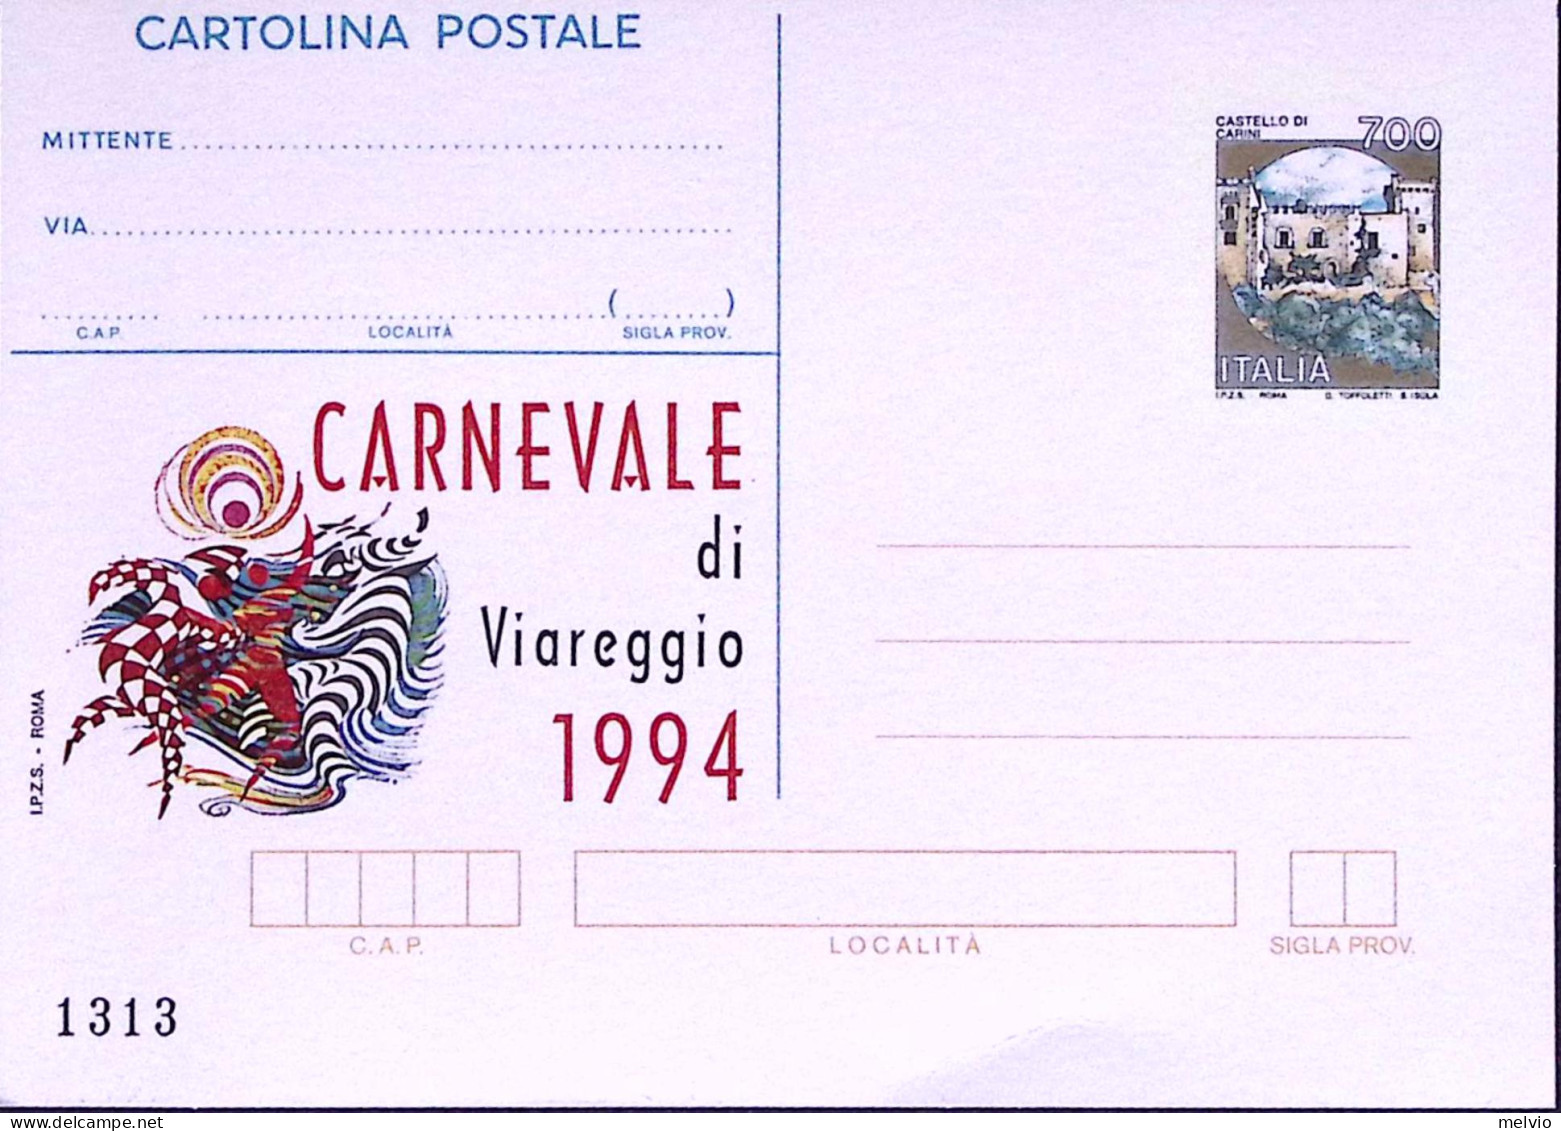 1994-VIAREGGIO CARNEVALE Cartolina Postale Lire 700 Soprastampata I.P.Z.S. Nuova - Stamped Stationery